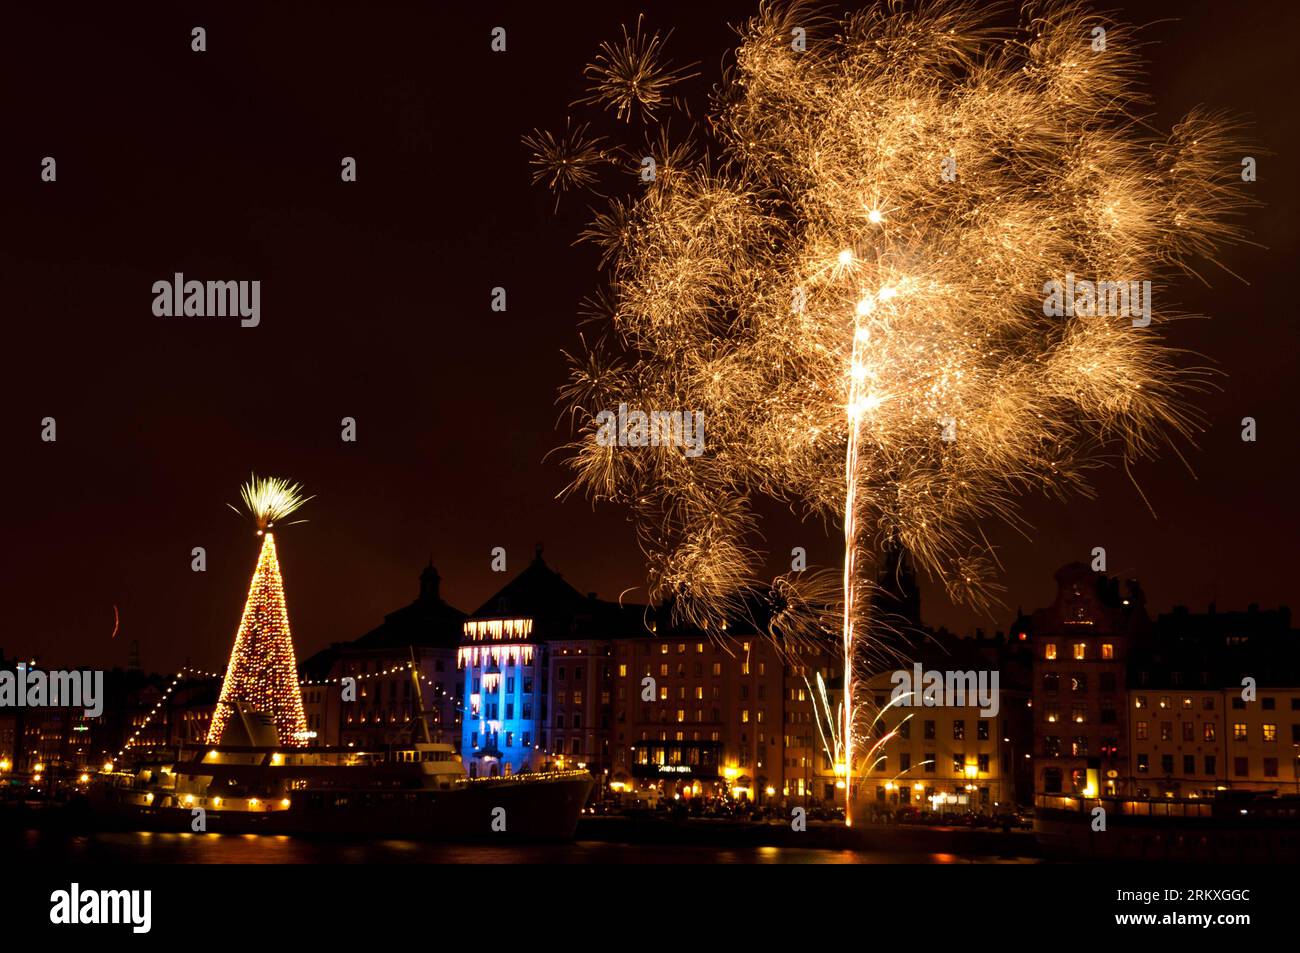 Bildnummer: 58958586  Datum: 01.01.2013  Copyright: imago/Xinhua (130101) -- STOCKHOLM, Jan. 1, 2013 (Xinhua) -- Fireworks explode during New Year celebrations in Stockholm, Sweden, on Jan. 1, 2013. (Xinhua/Liu Yinan) (nxl) SWEDEN-STOCKHOLM-NEW YEAR-FIREWORKS PUBLICATIONxNOTxINxCHN Gesellschaft Silvester Neujahr 2012 2013 Jahreswechsel Feuerwerk xdp x0x 2013 quer premiumd      58958586 Date 01 01 2013 Copyright Imago XINHUA  Stockholm Jan 1 2013 XINHUA Fireworks explode during New Year celebrations in Stockholm Sweden ON Jan 1 2013 XINHUA Liu Yinan nxl Sweden Stockholm New Year Fireworks PUBLI Stock Photo